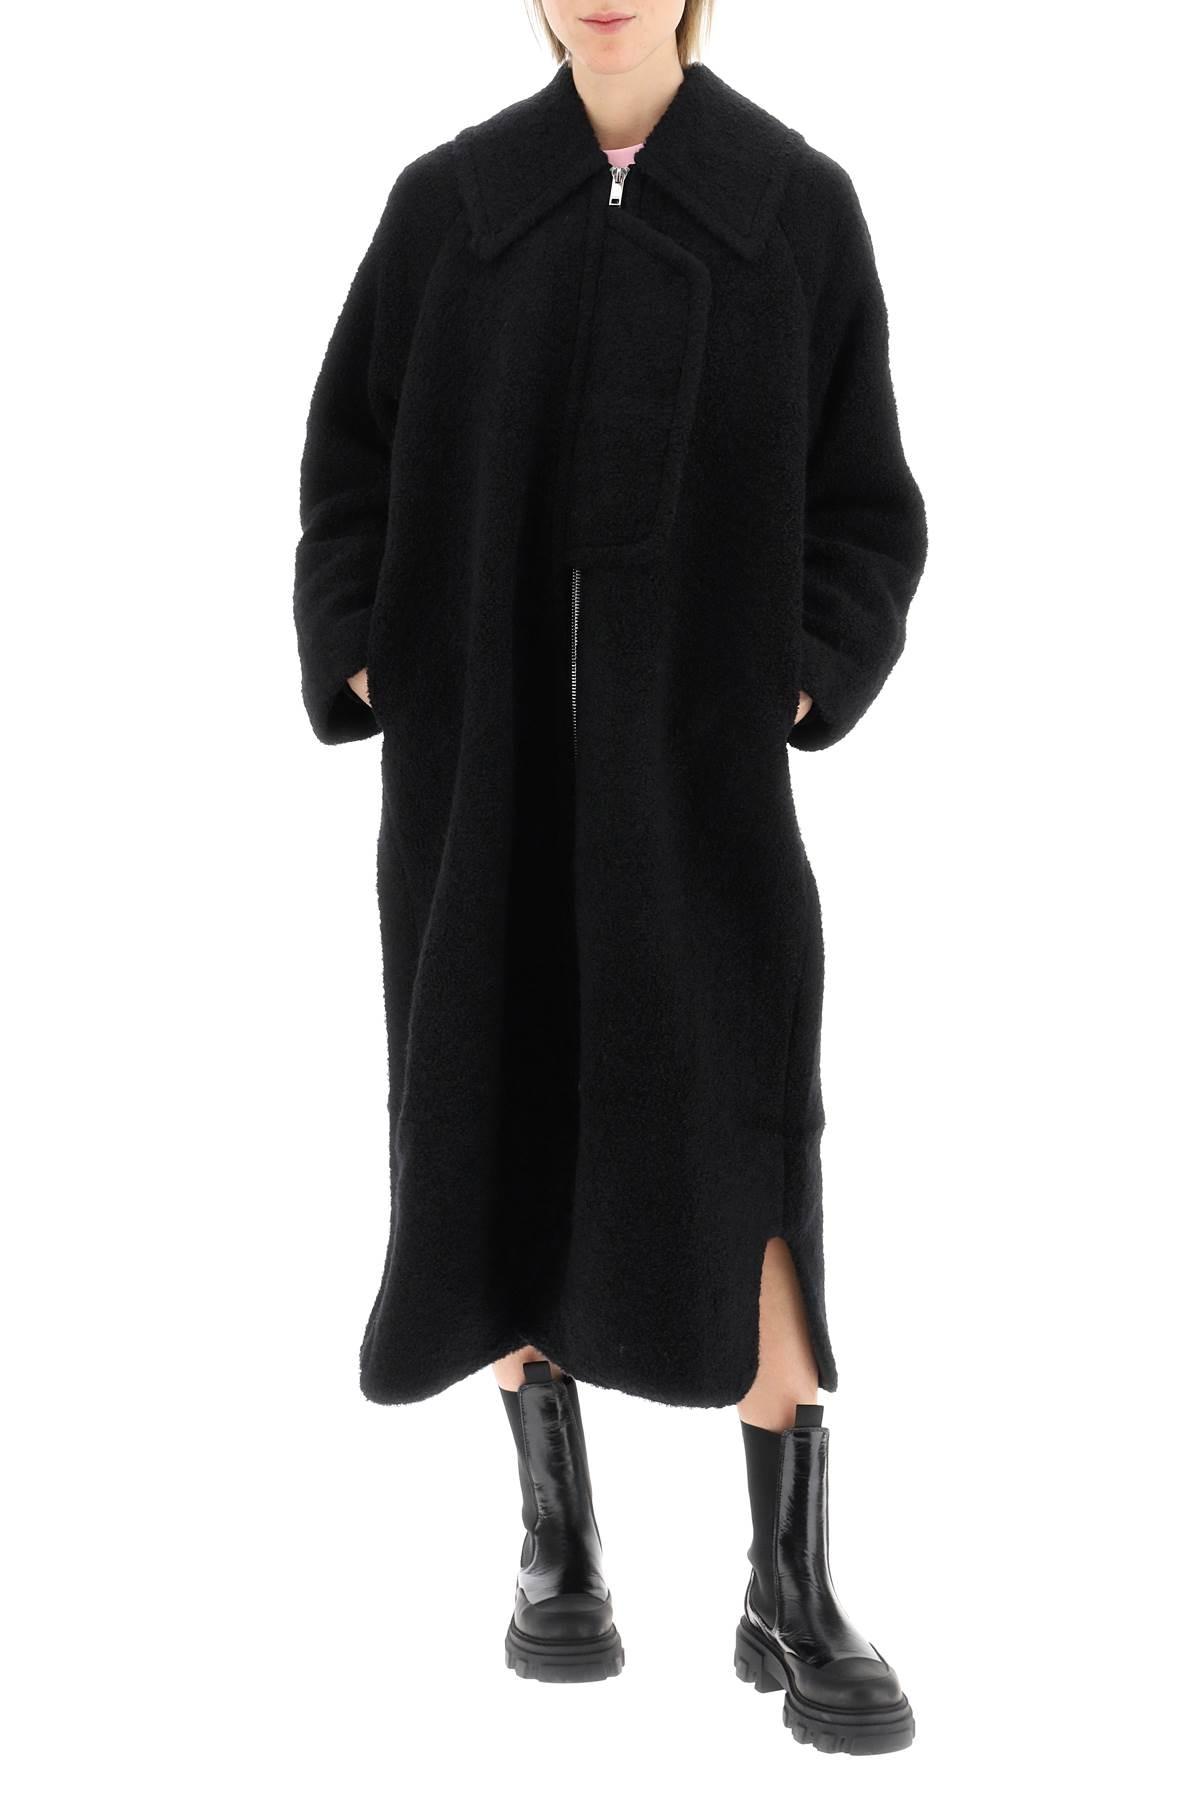 Ganni Boucle Wool Long Coat in Black | Lyst